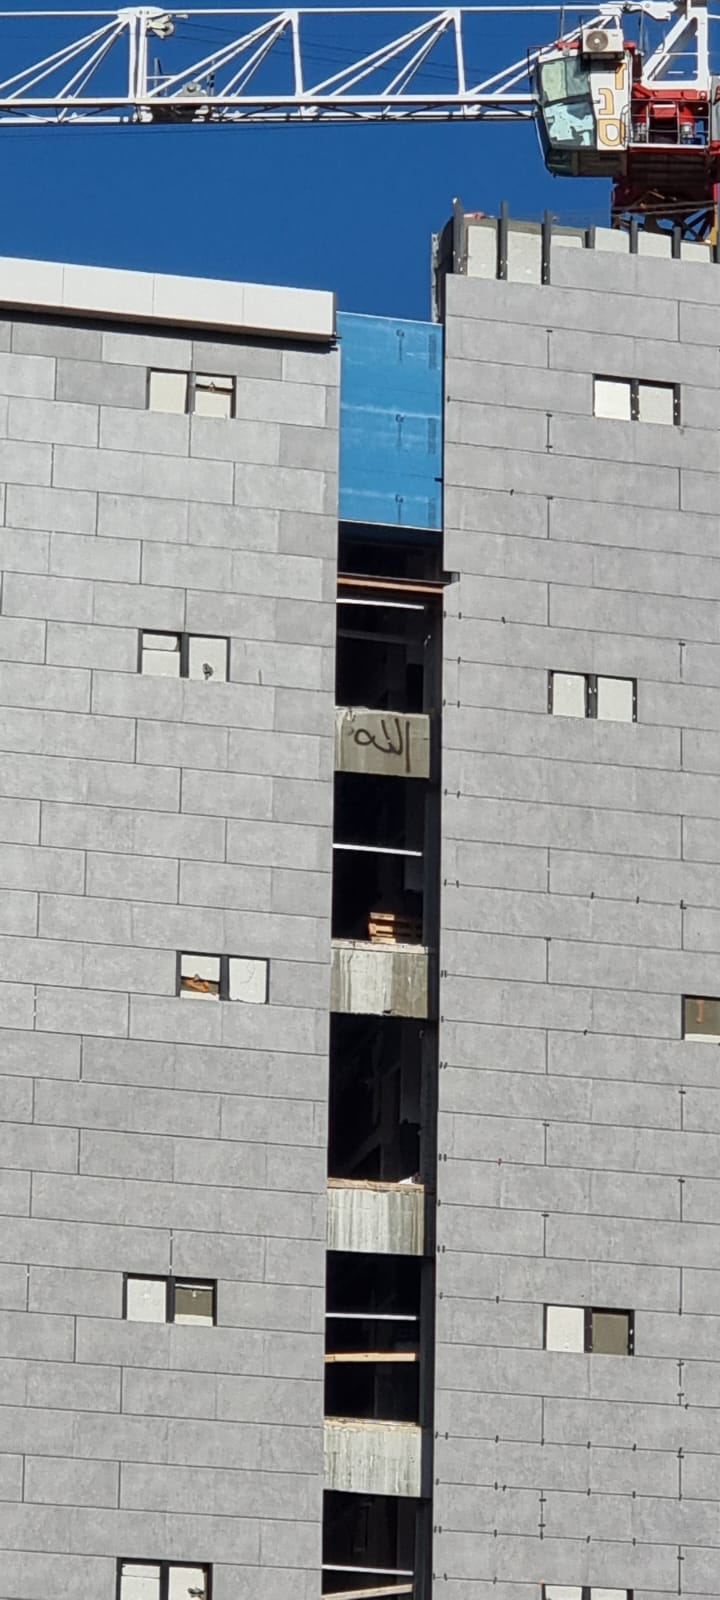 בעקבות פרסום מידע 8: הוסר סימן הג’יהאד האיסלמי מבניין הסטודנטים שנבנה בקריית שמונה